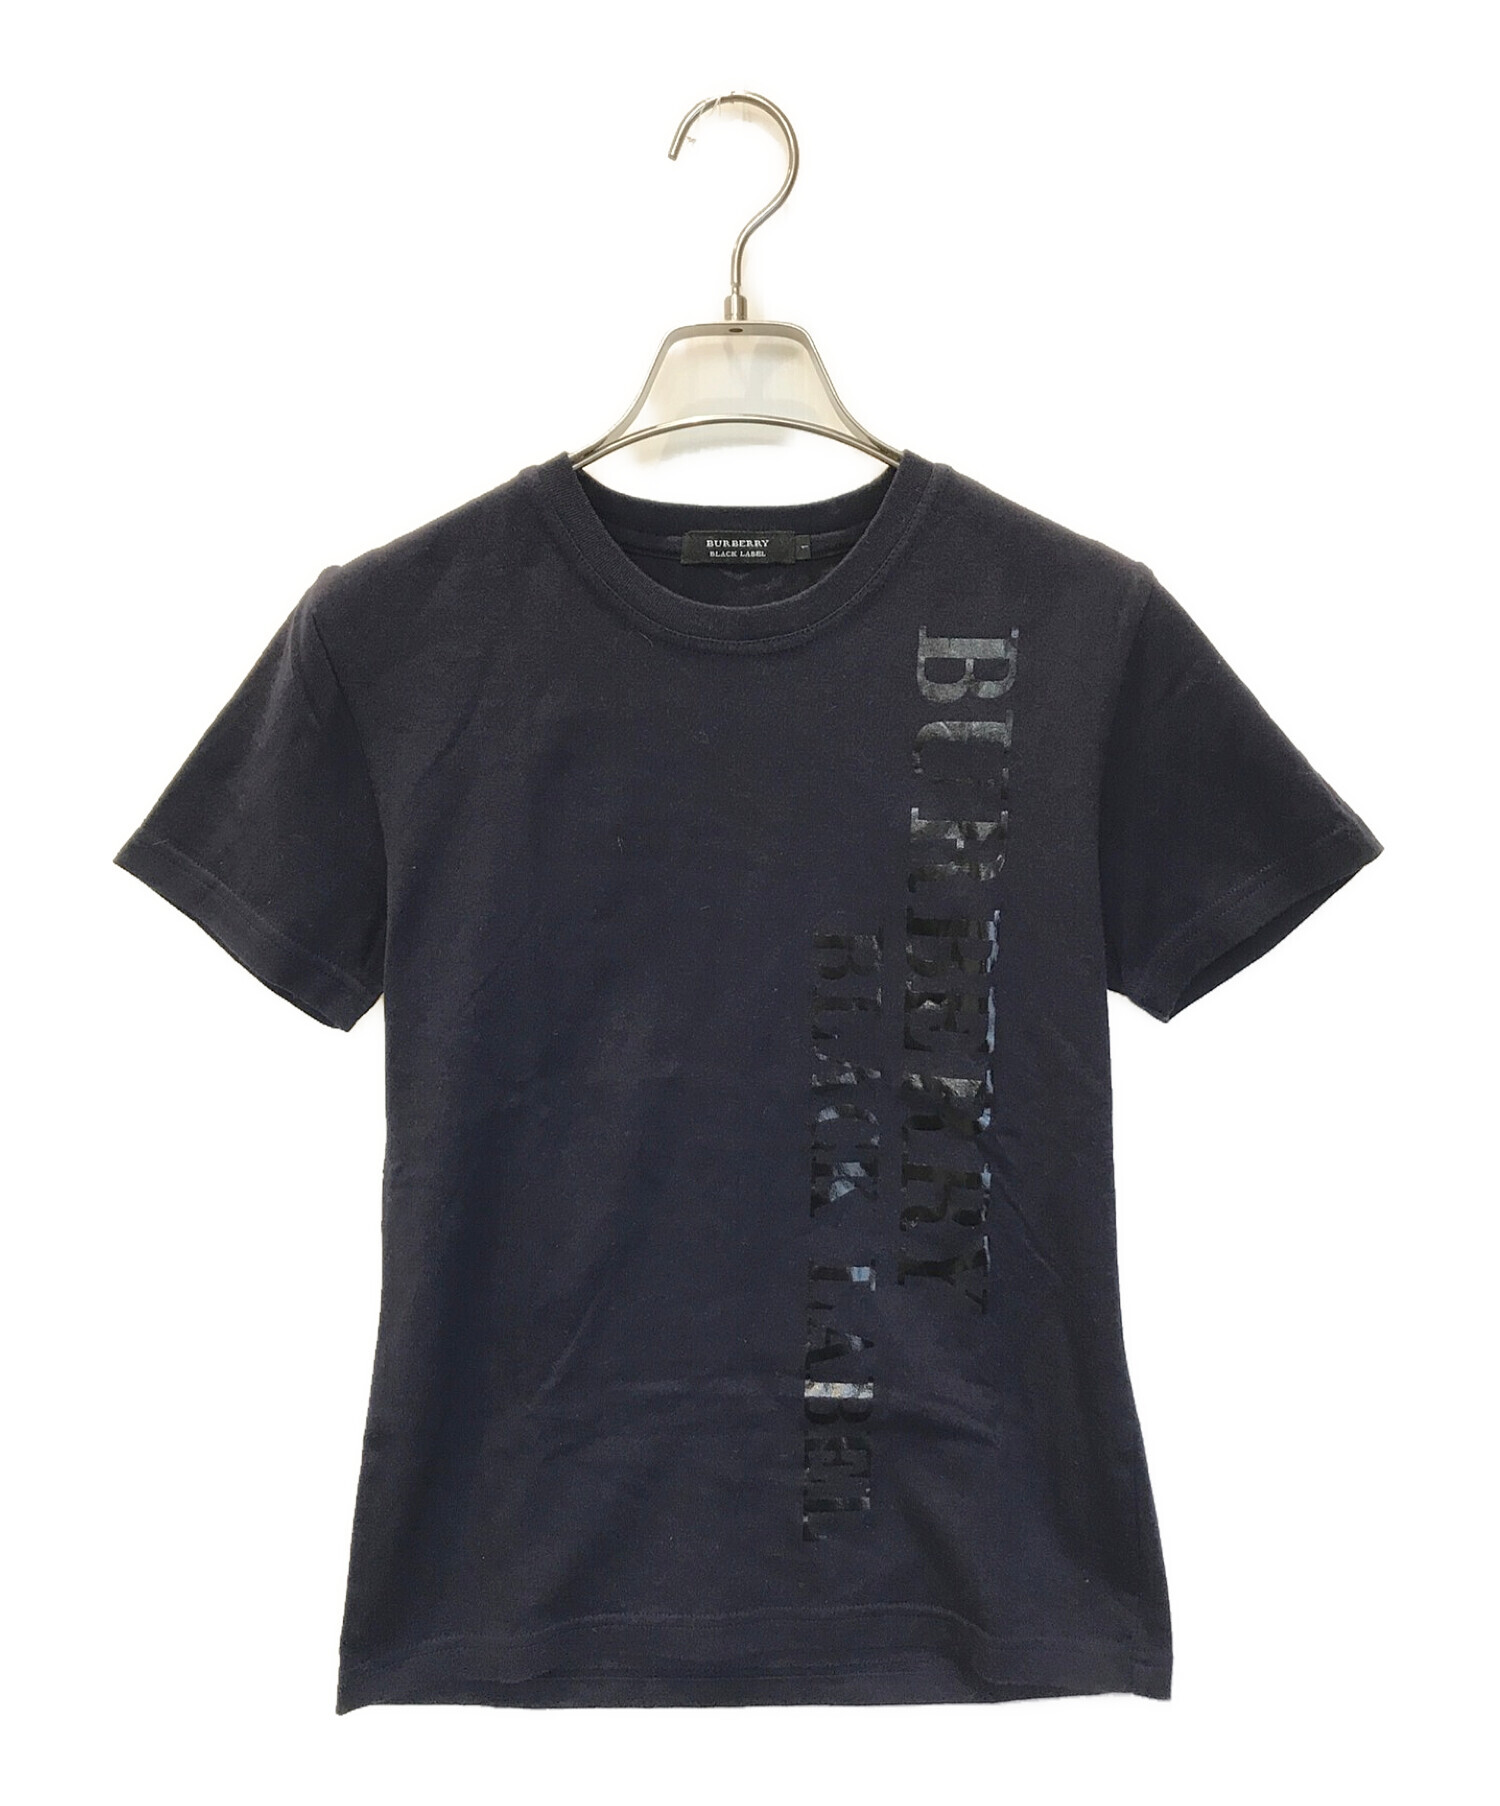 BURBERRY BLACK LABEL (バーバリーブラックレーベル) Tシャツ ネイビー サイズ:1